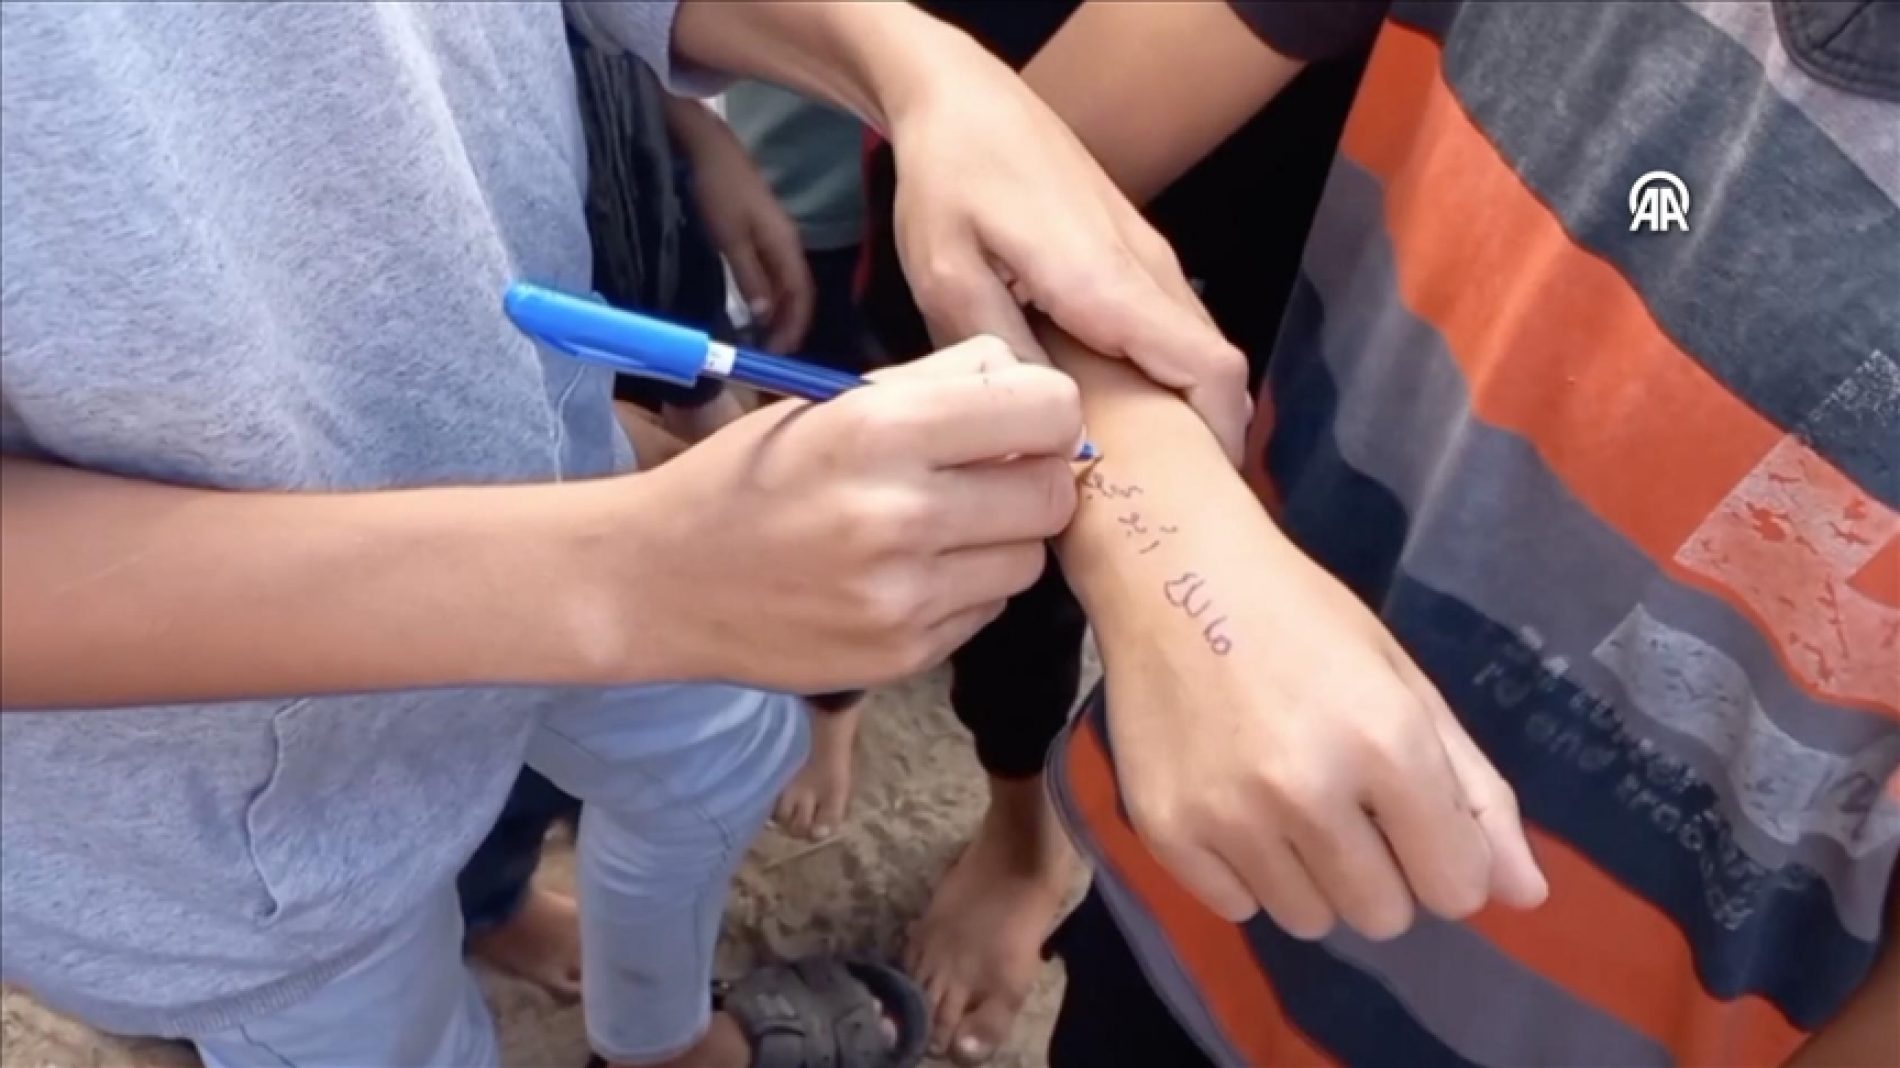 U Gazi ispisuju ​​imena na dječjim rukama kako bi ih mogli prepoznati ako stradaju. Izraelski napadi zbrisali su cijele porodice